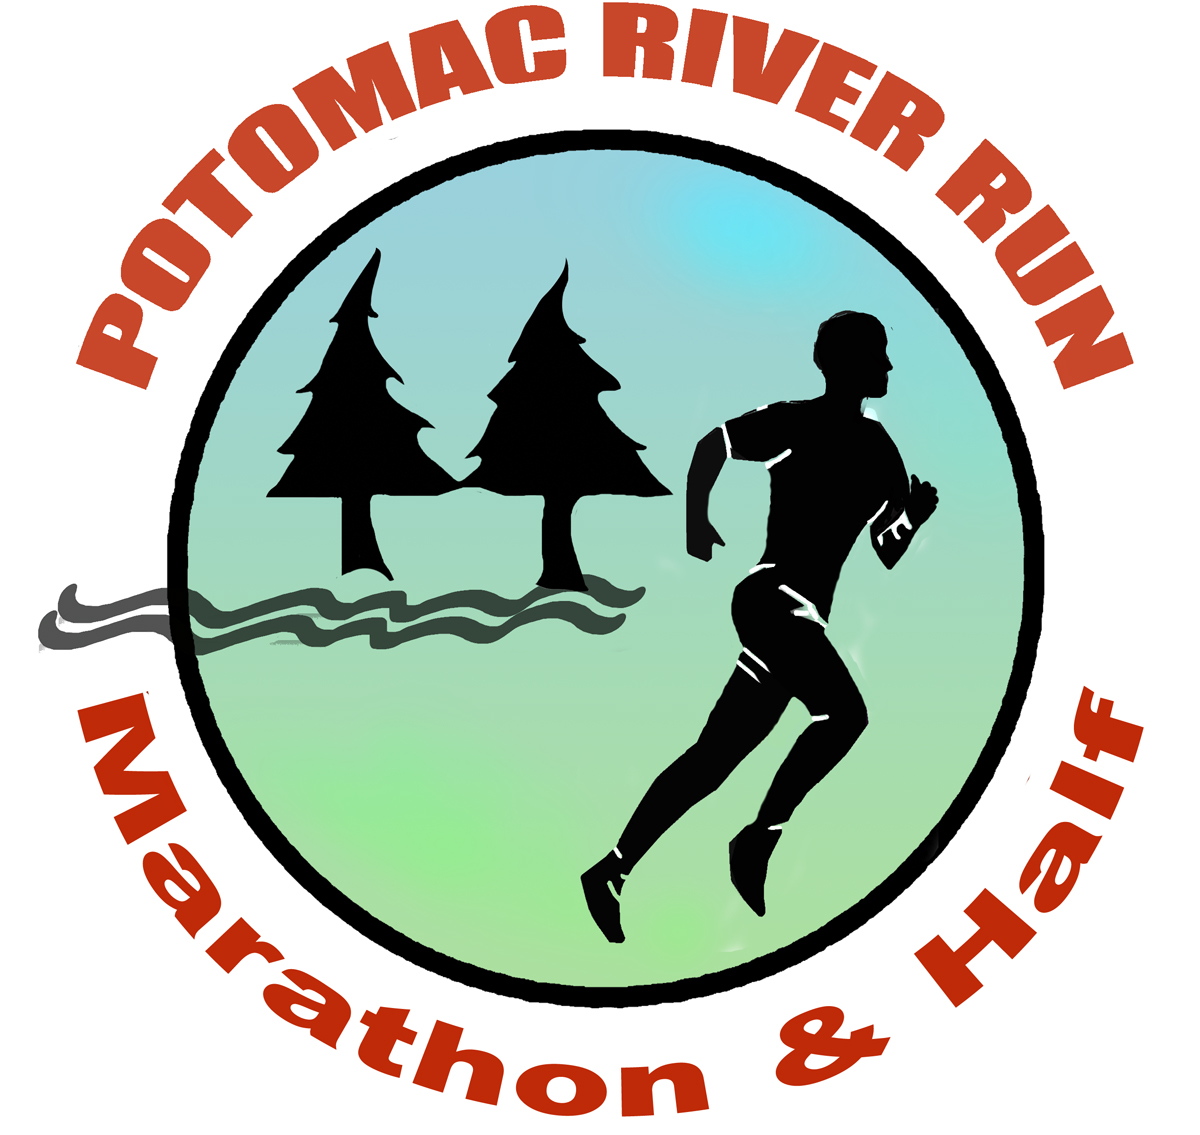 Potomac River Run